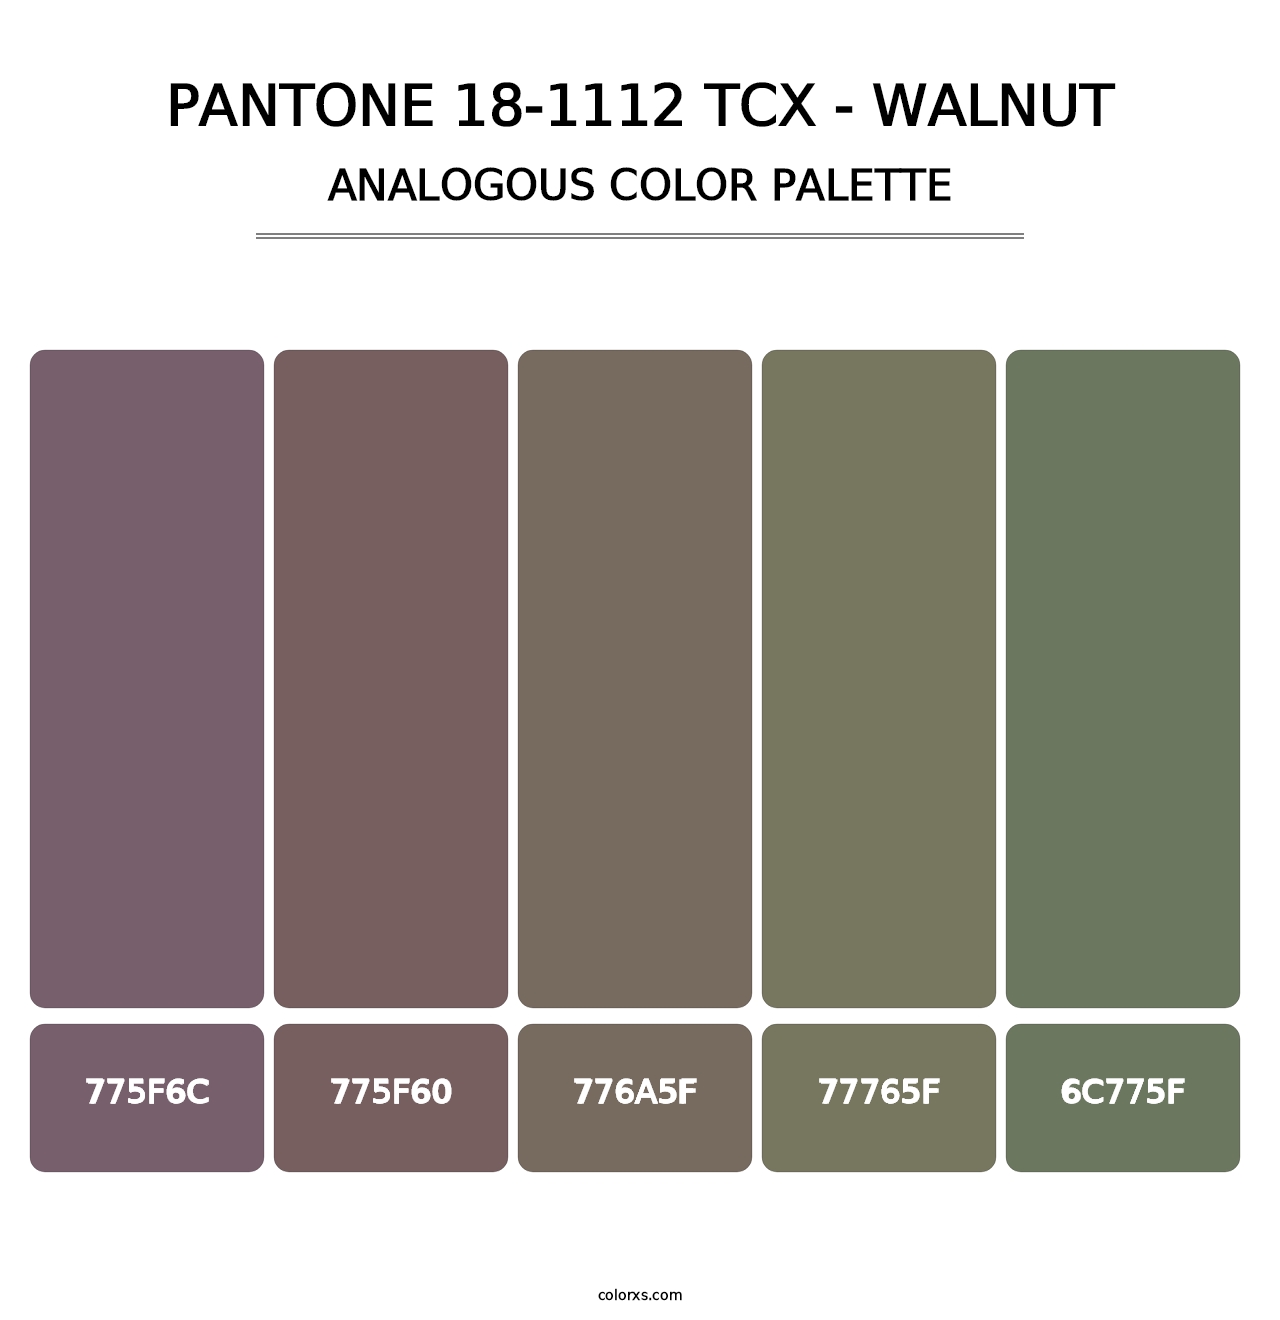 PANTONE 18-1112 TCX - Walnut - Analogous Color Palette